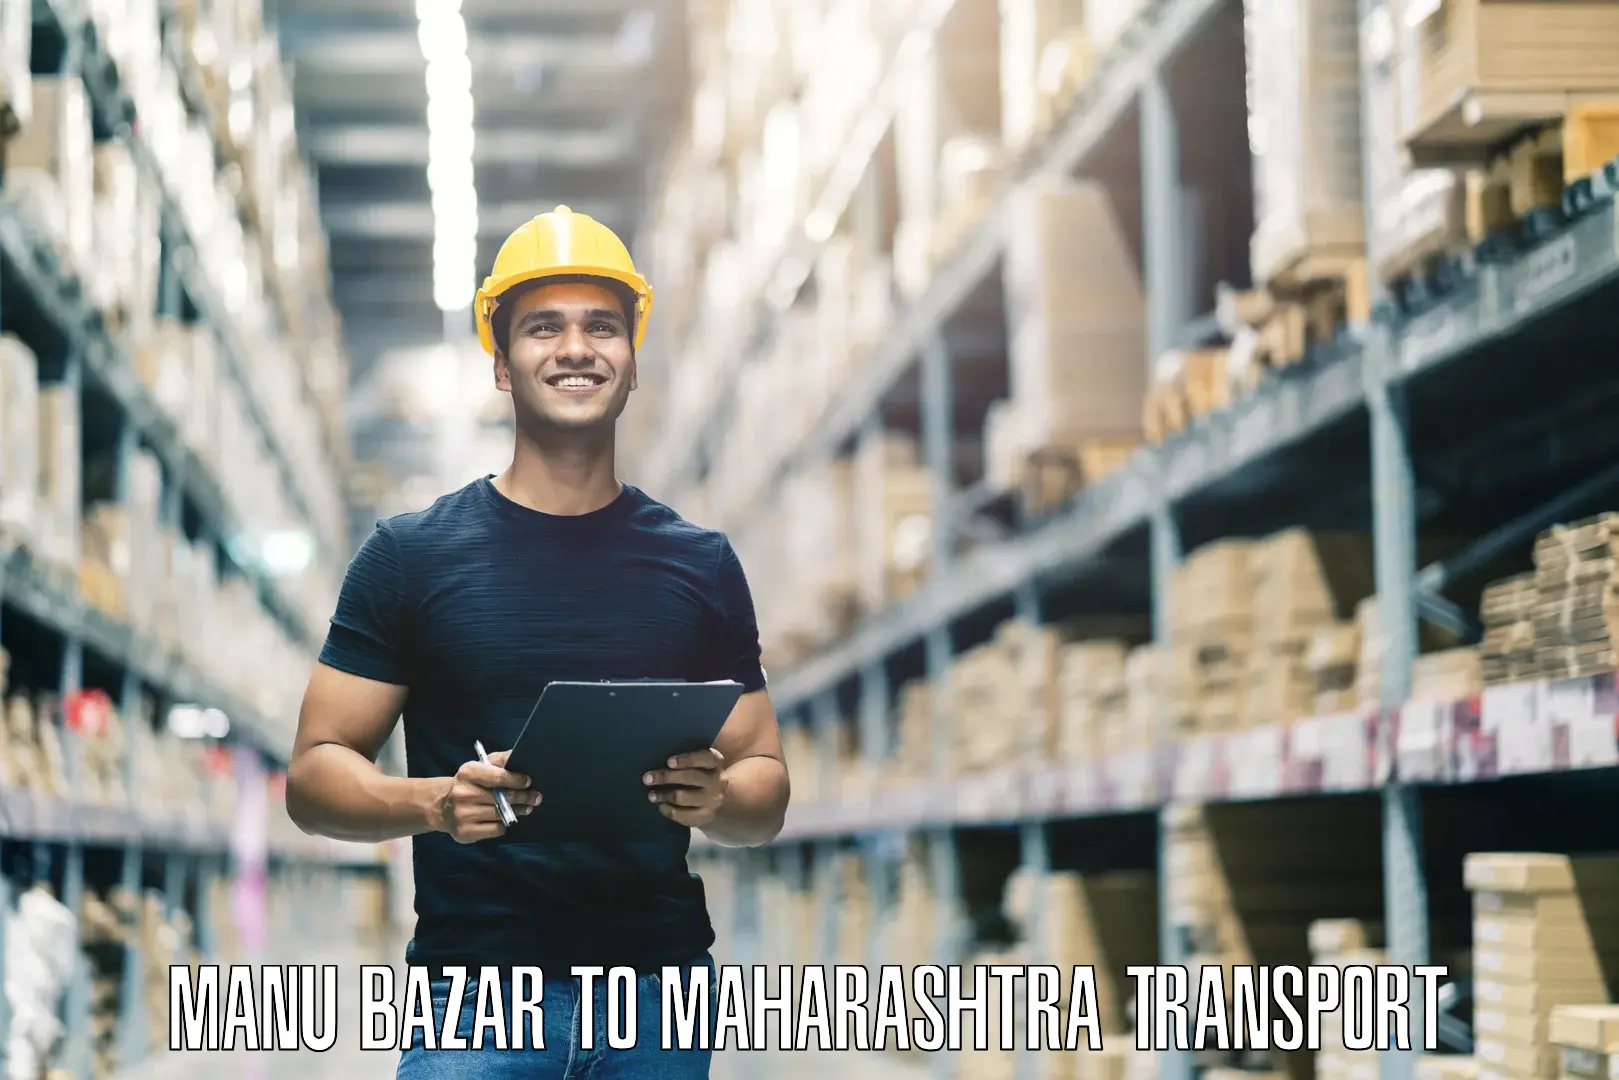 Shipping partner Manu Bazar to Nandurbar